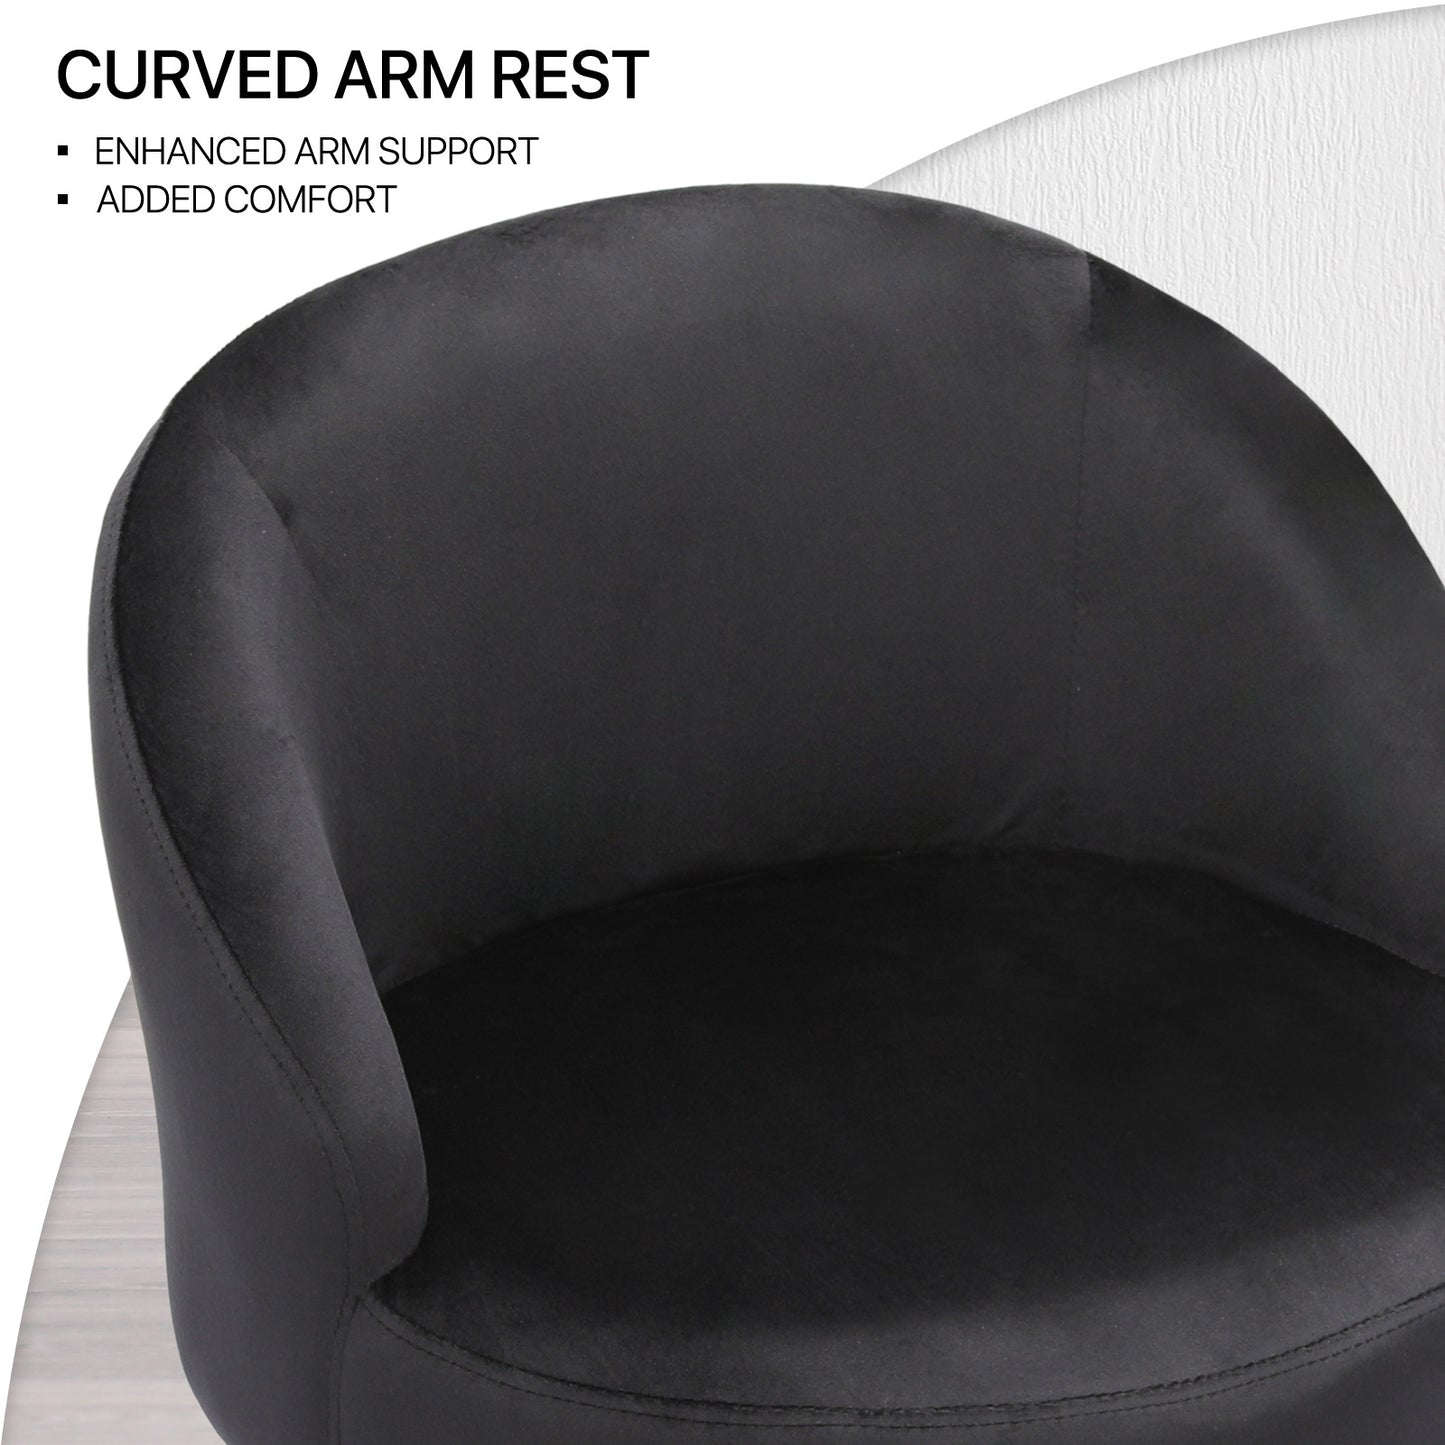 Modern Tufted Velvet Upholstered Accent Chair